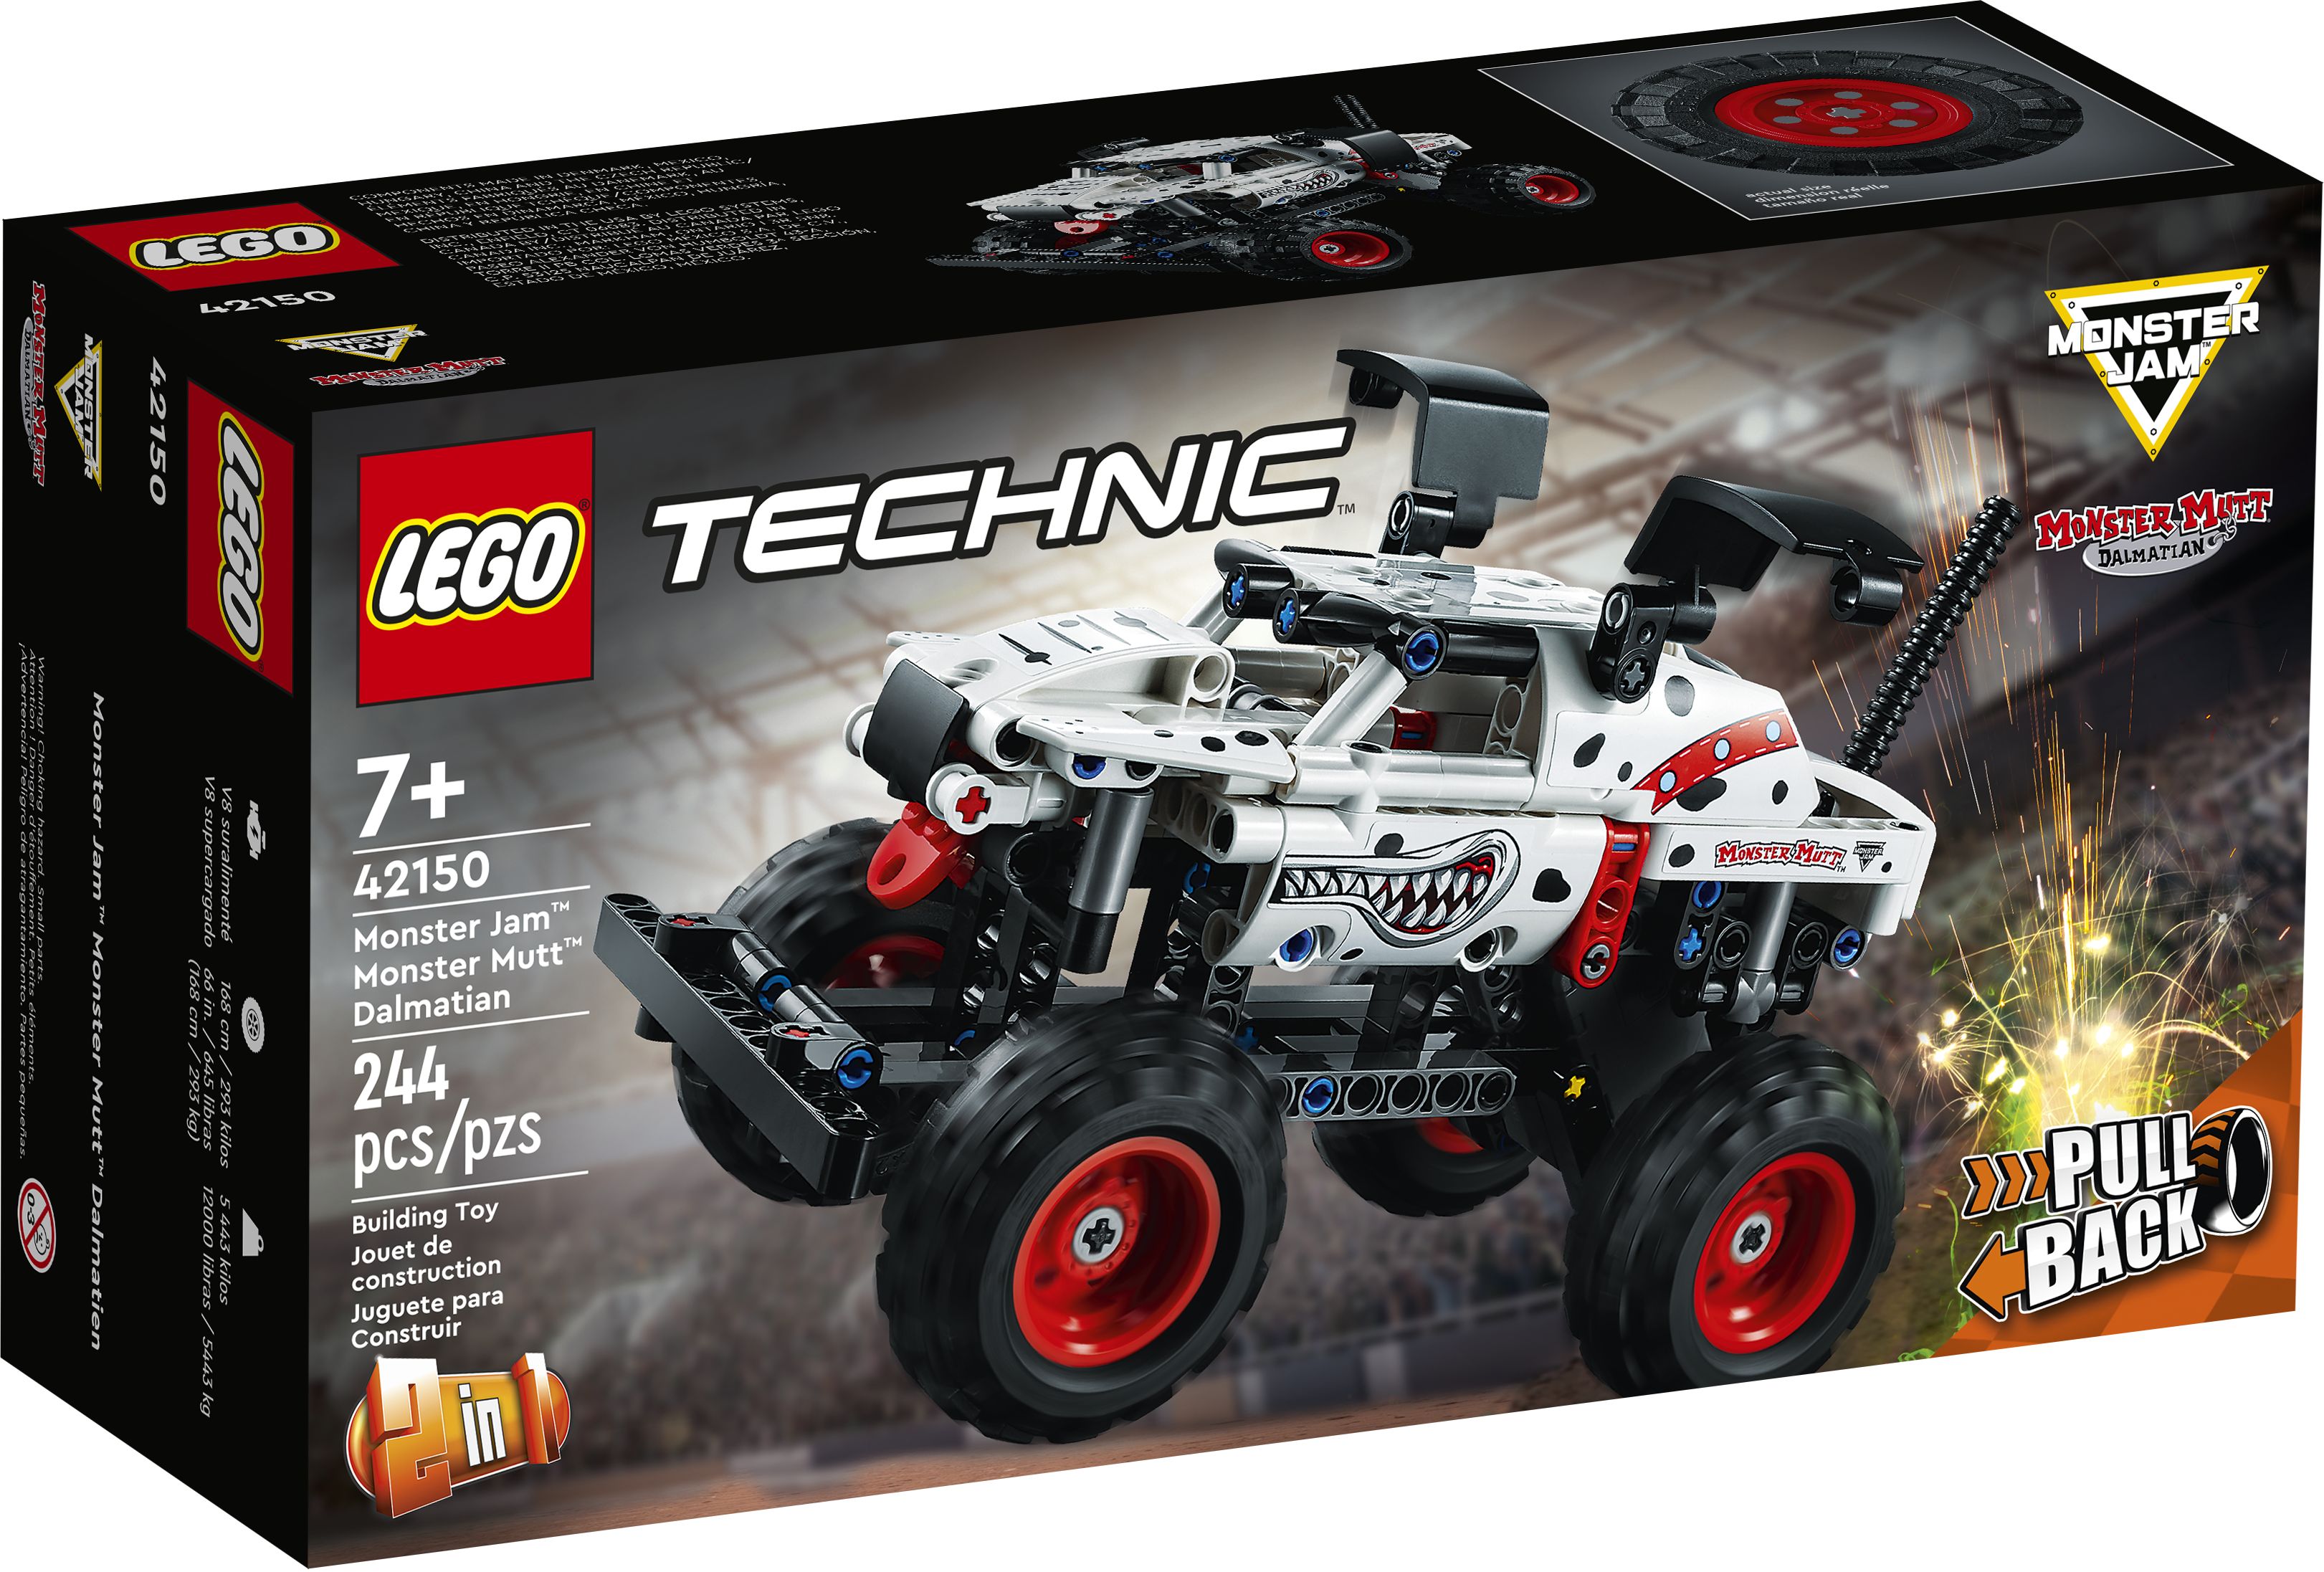 LEGO Technic 42150 Monster Jam™ Monster Mutt™ Dalmatian LEGO_42150_Box1_v39.jpg